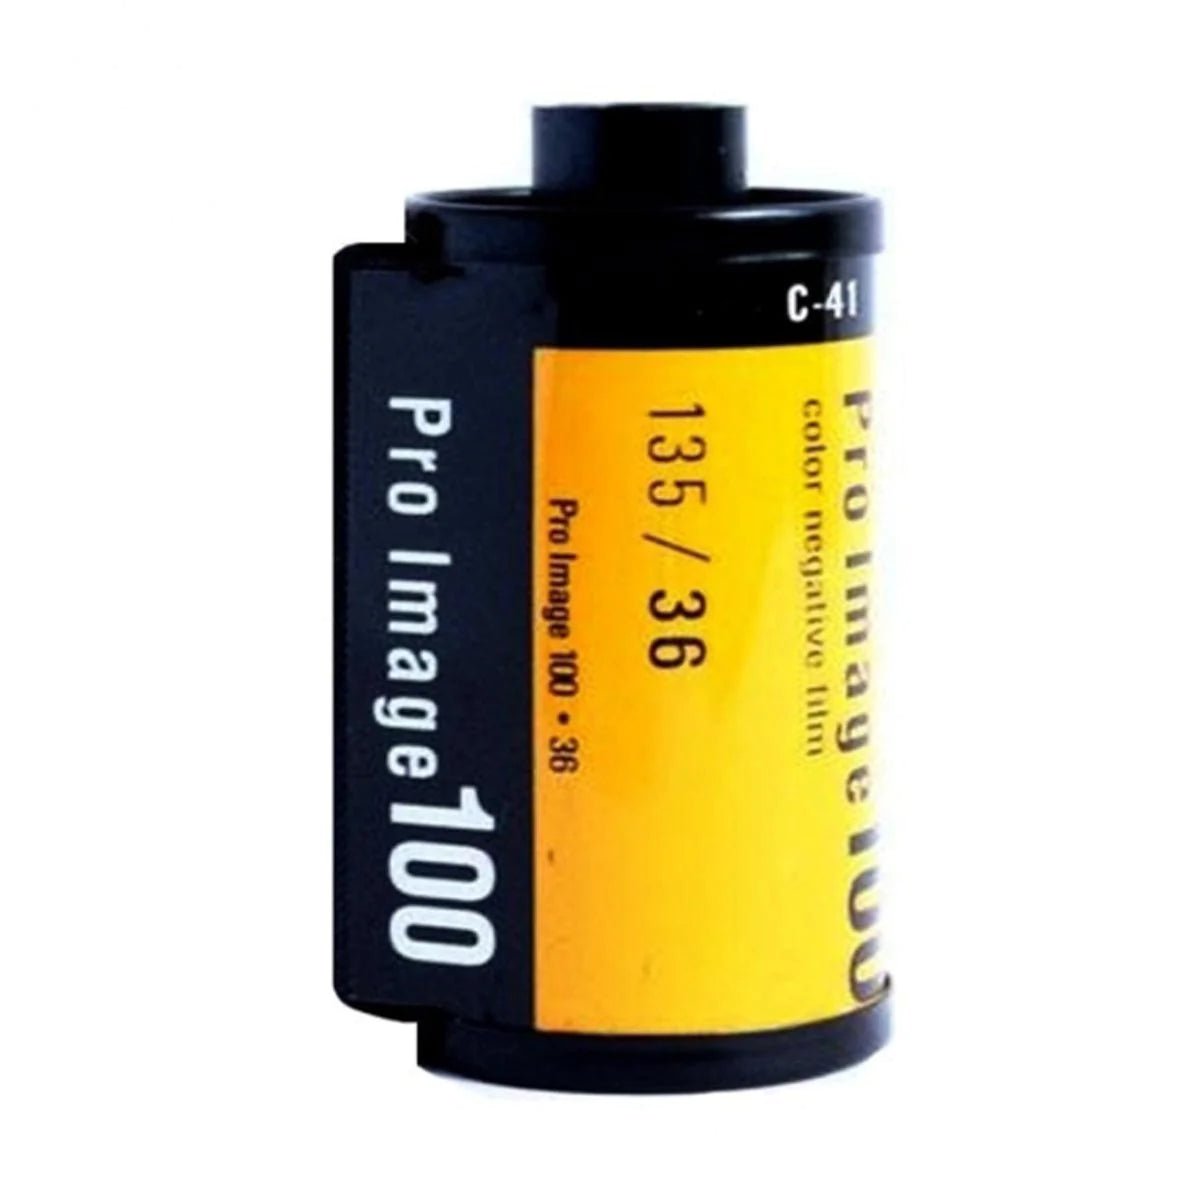 Kodak T-Max 100 B&N 35mm